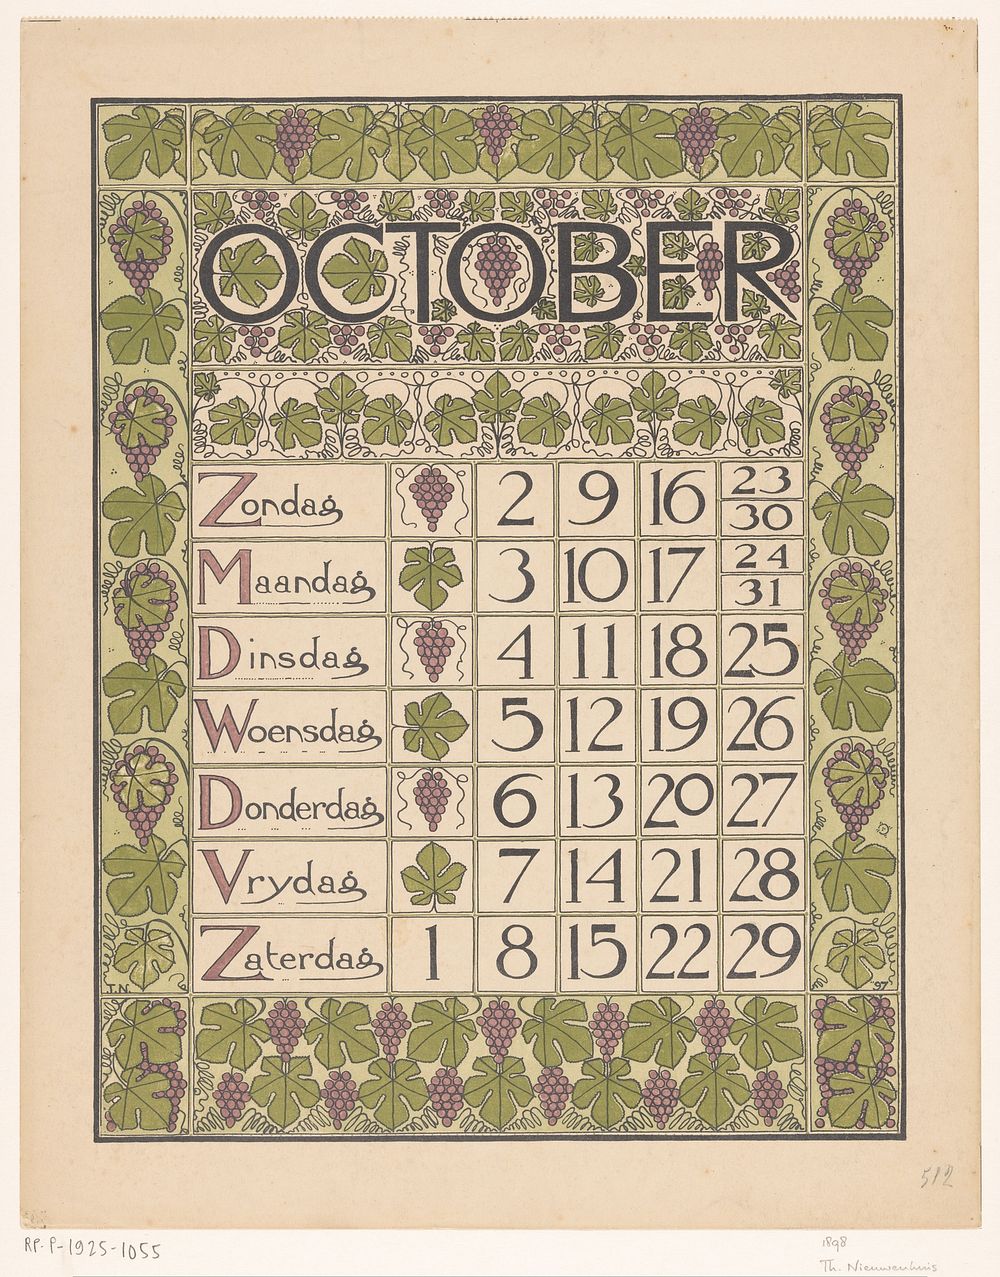 Kalenderblad voor oktober 1898 (1897) by Theo Nieuwenhuis and Scheltema and Holkema s Boekhandel